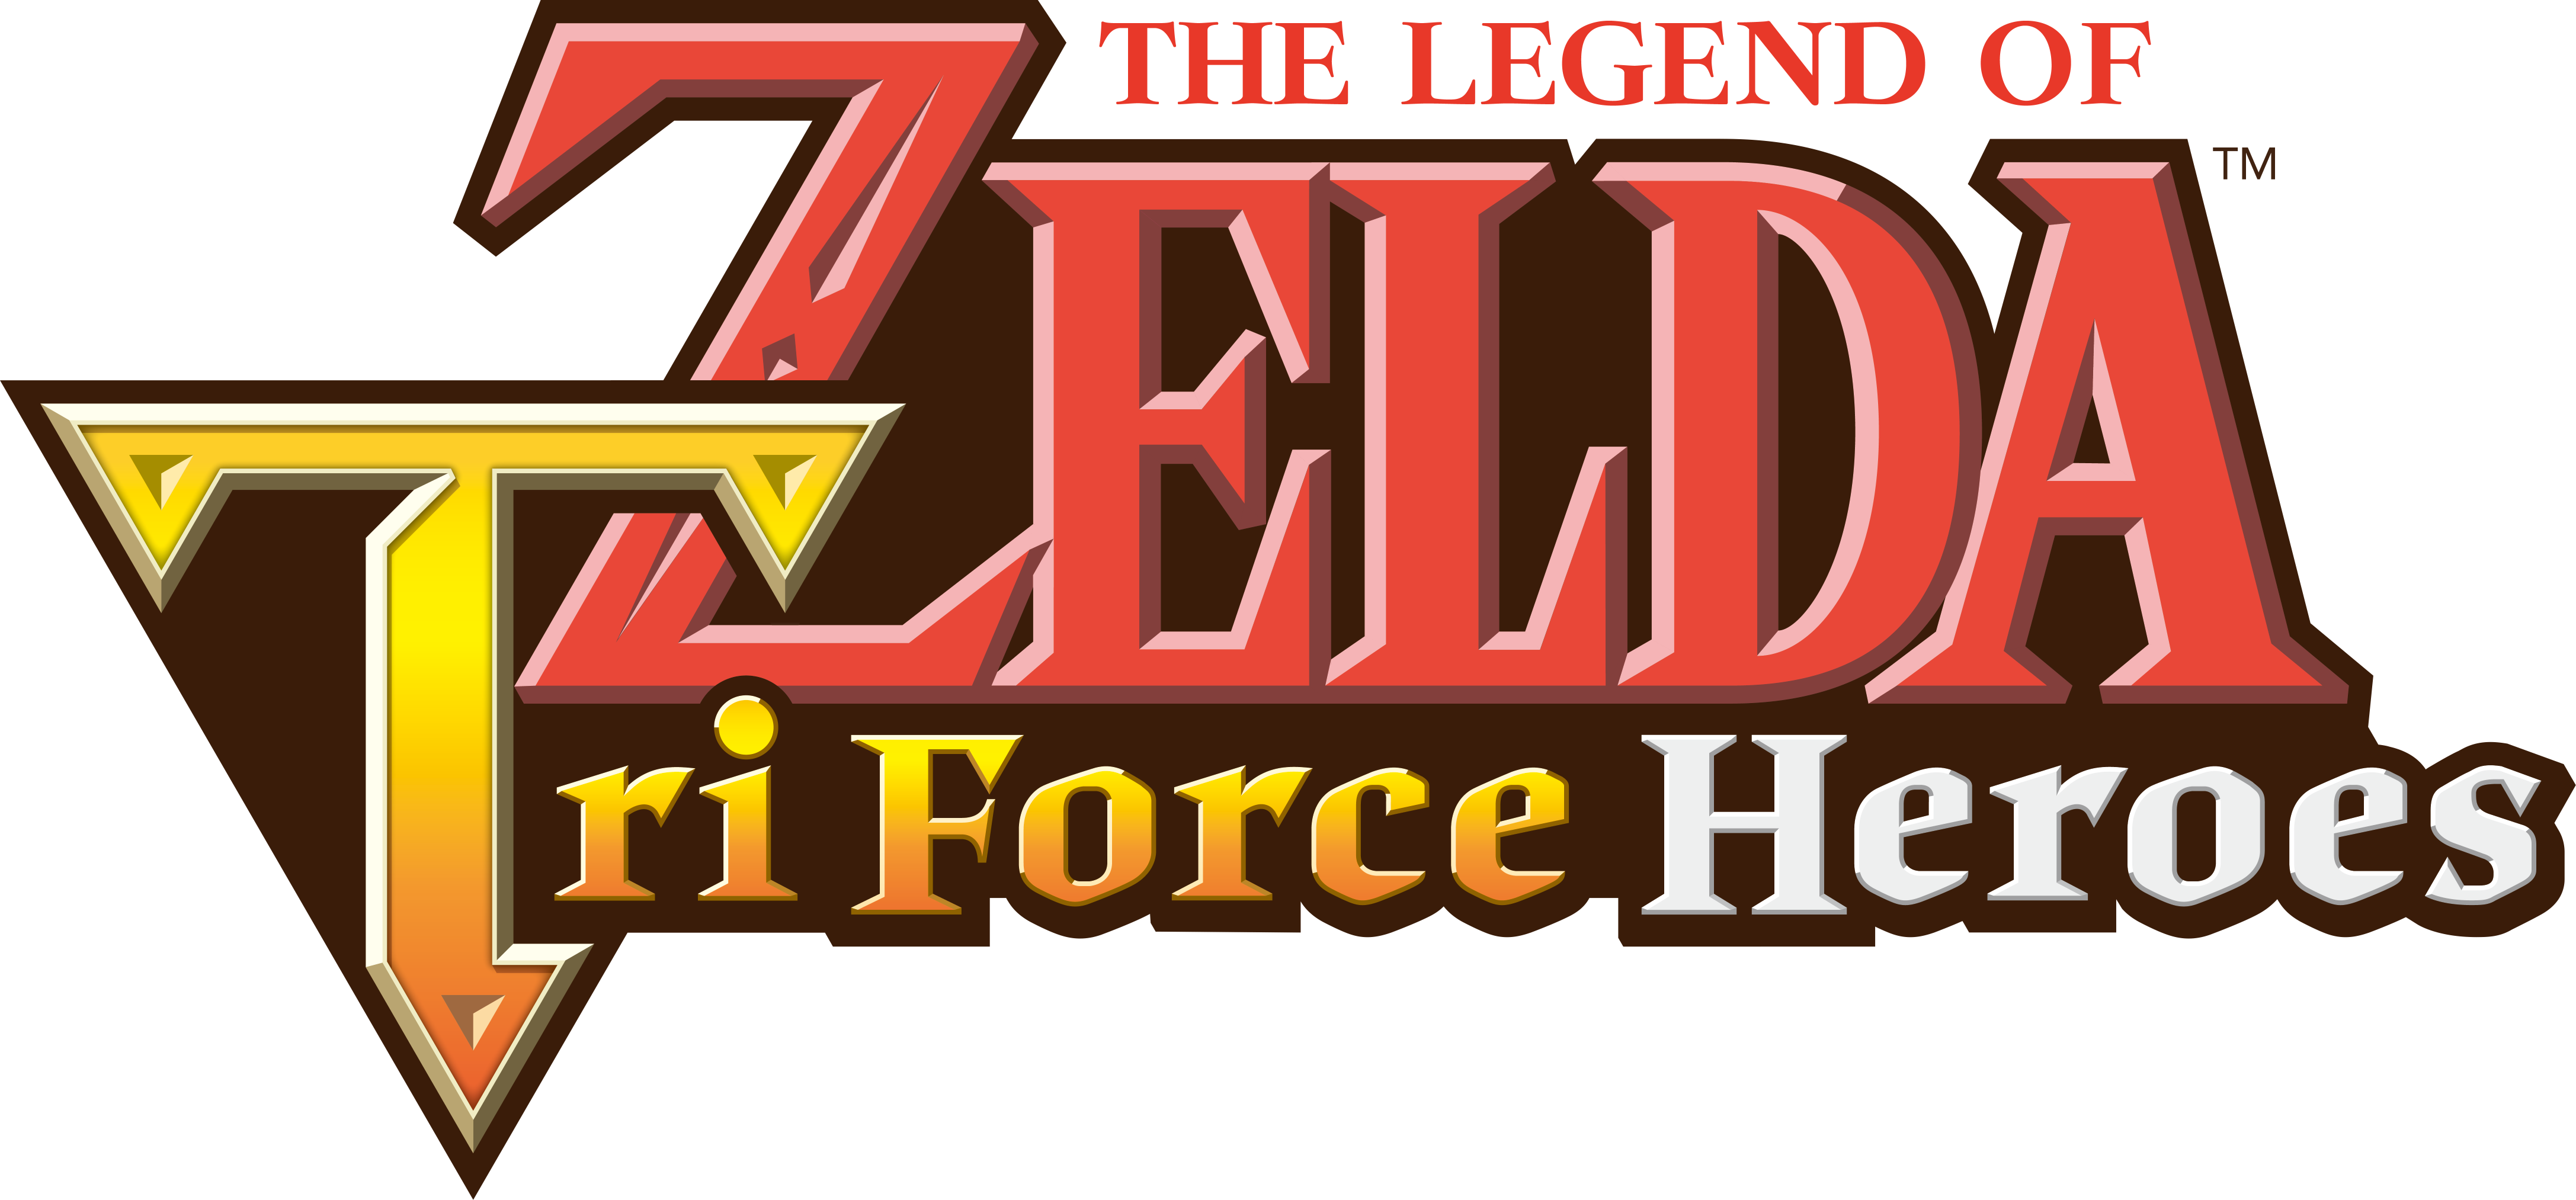 the legend of zelda tri force heroes nintendo 3ds